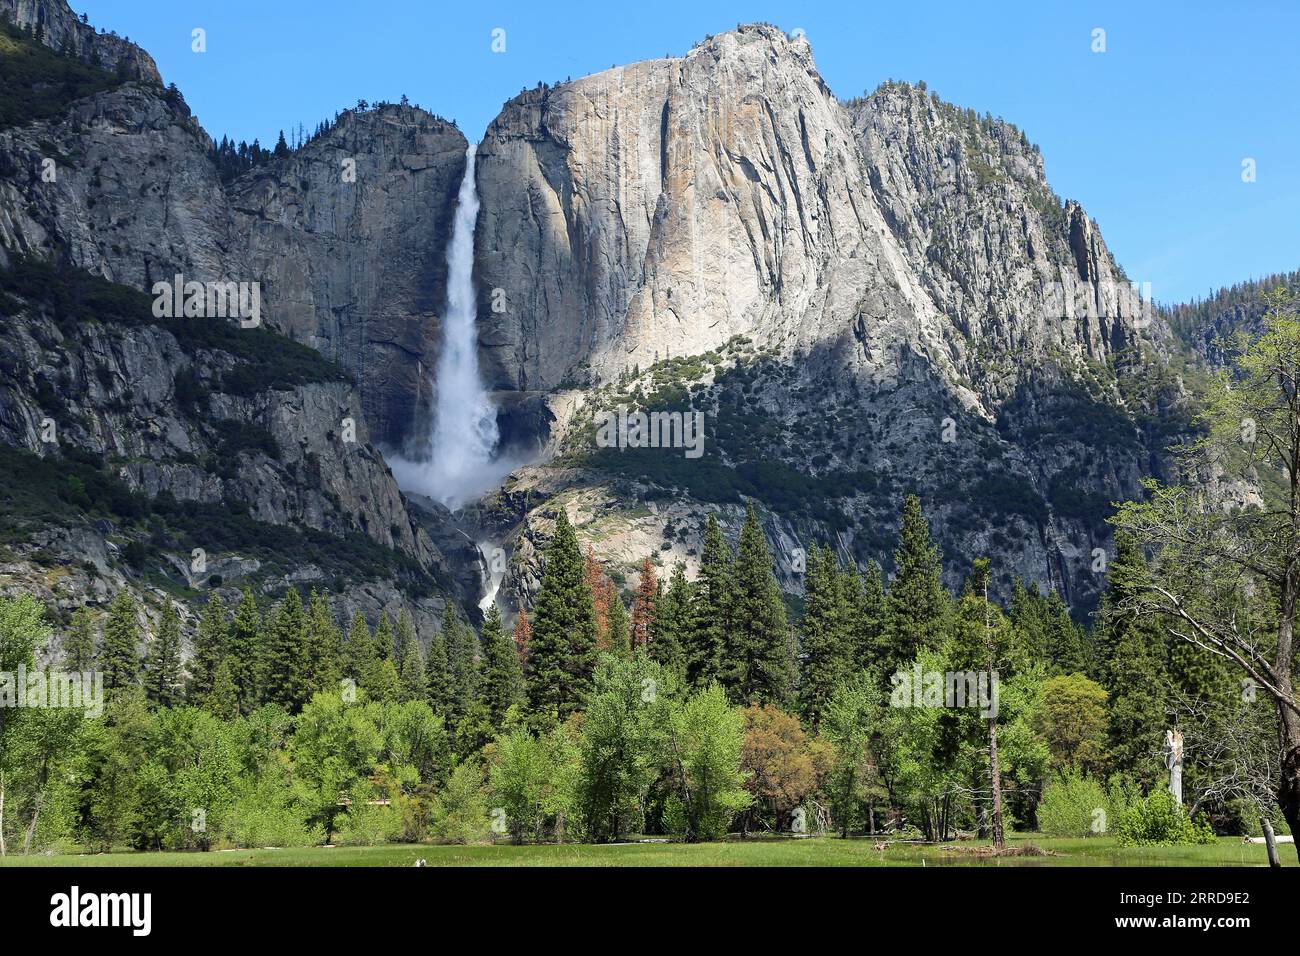 La scogliera con la cascata di Yosemite - Yosemite National Park, California Foto Stock